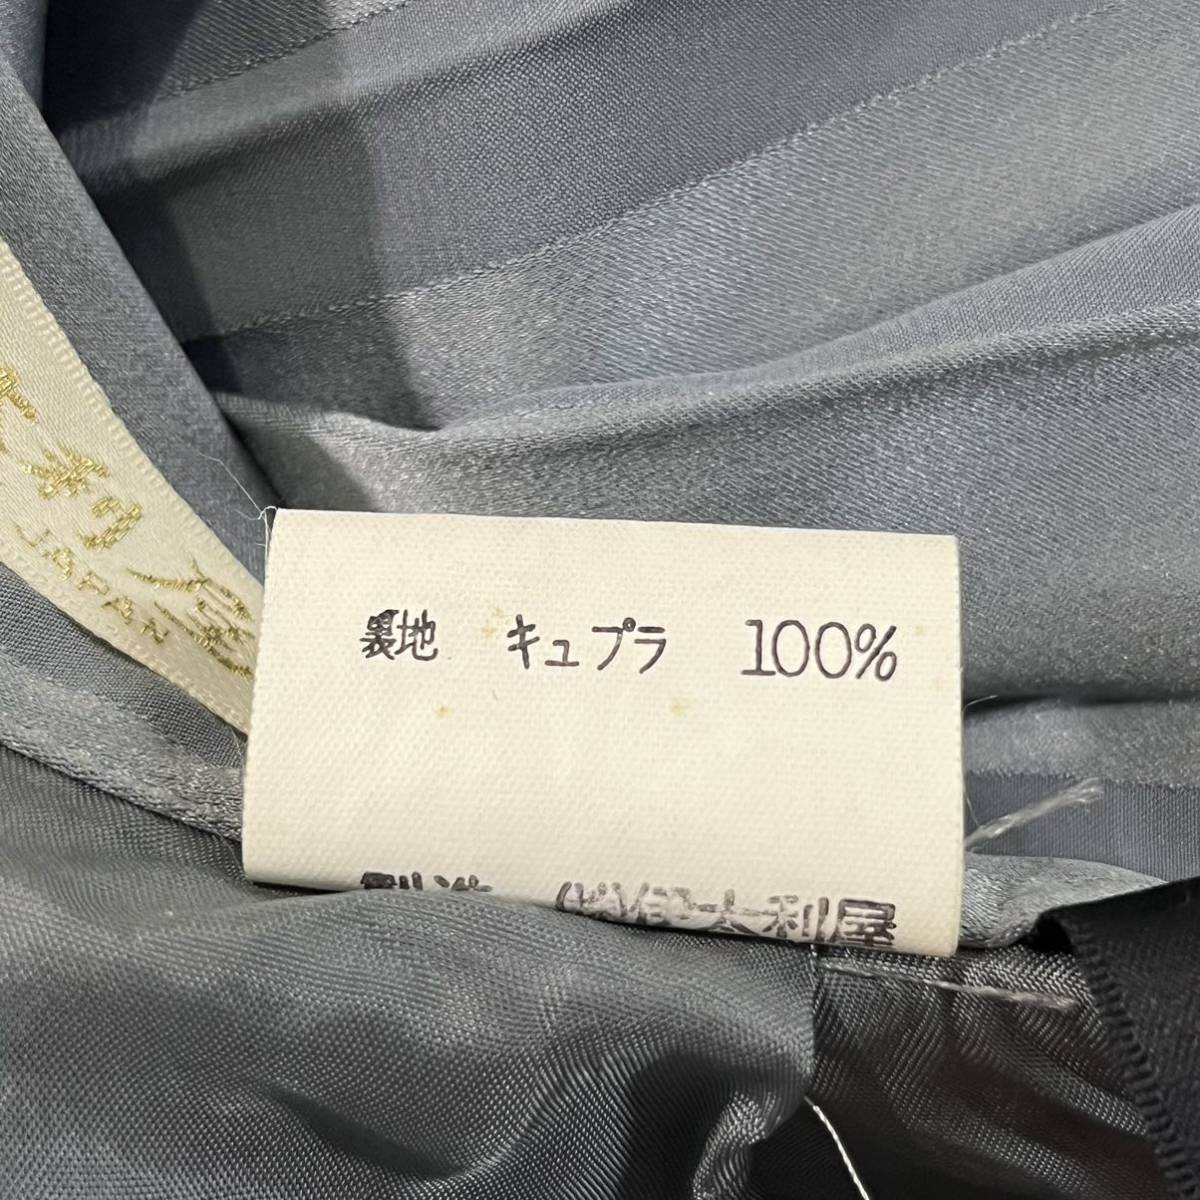  Italiya юбка в складку длинная юбка плиссировать дизайн gray silver сделано в Японии ita задний GKITALIYA[ letter pack почтовый сервис плюс отправка по почте возможно ]A